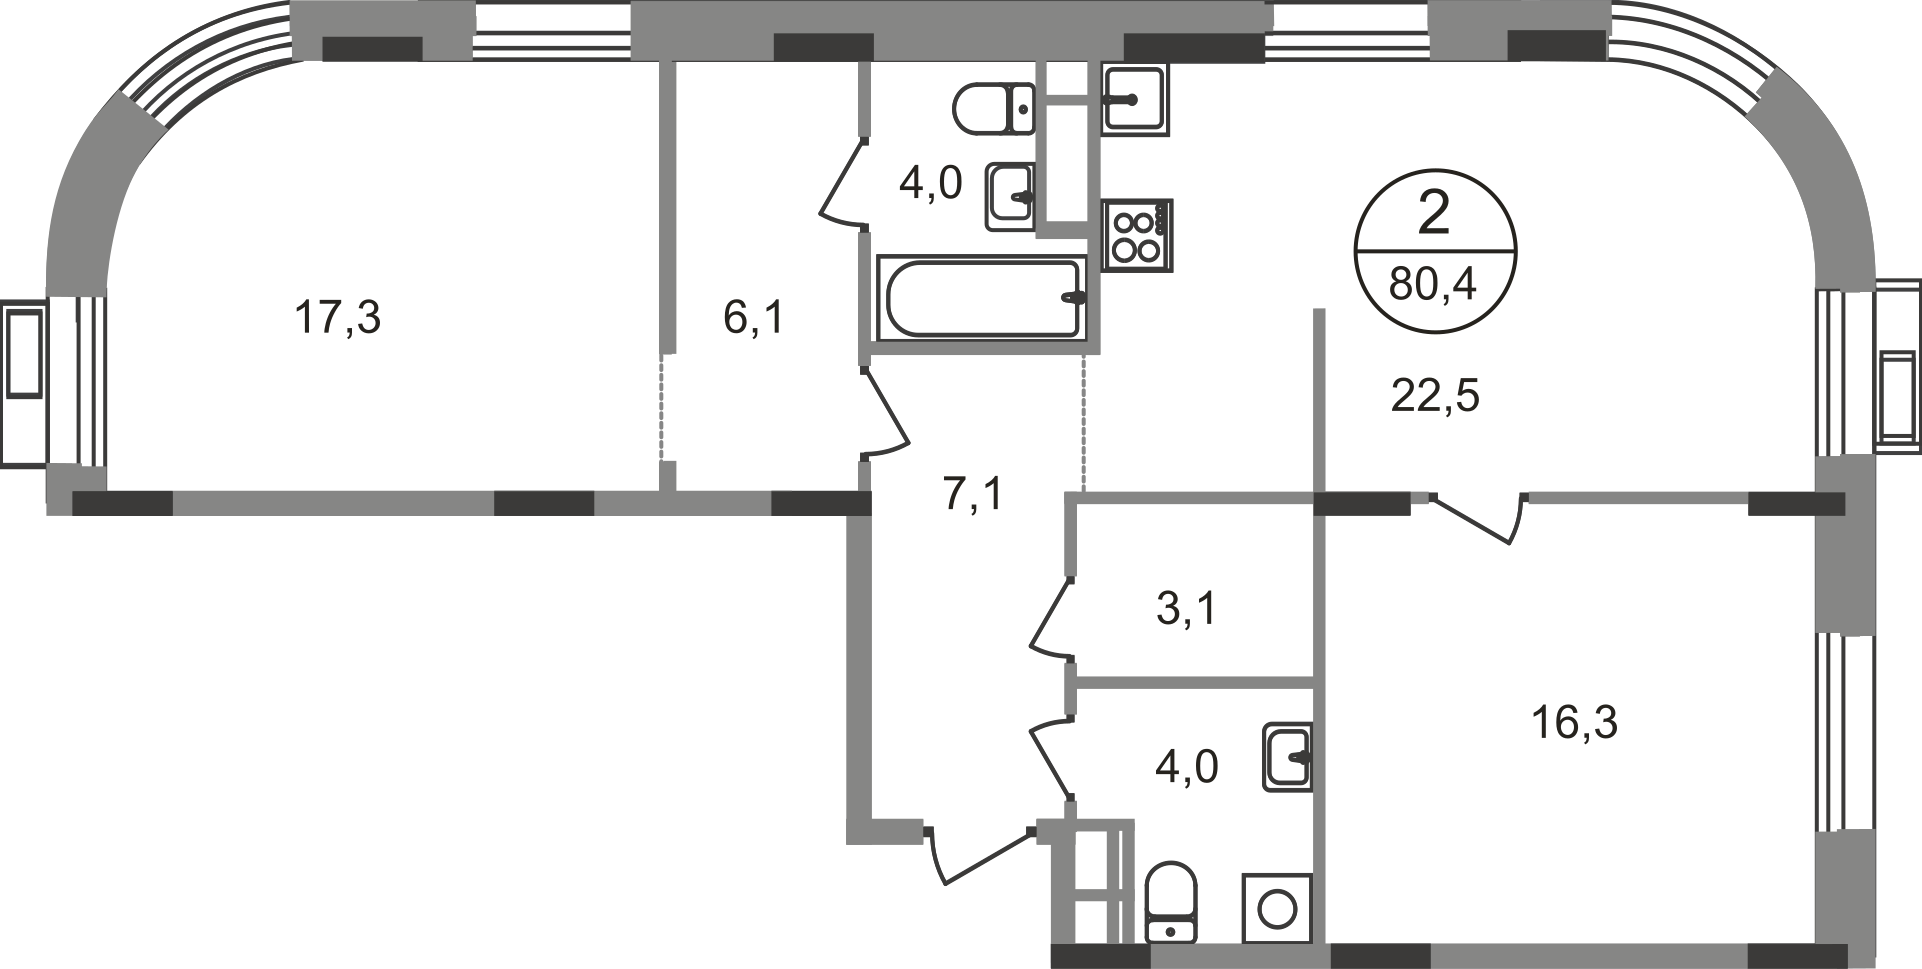 2 комн. квартира, 80.4 м², 4 этаж  (из 9)